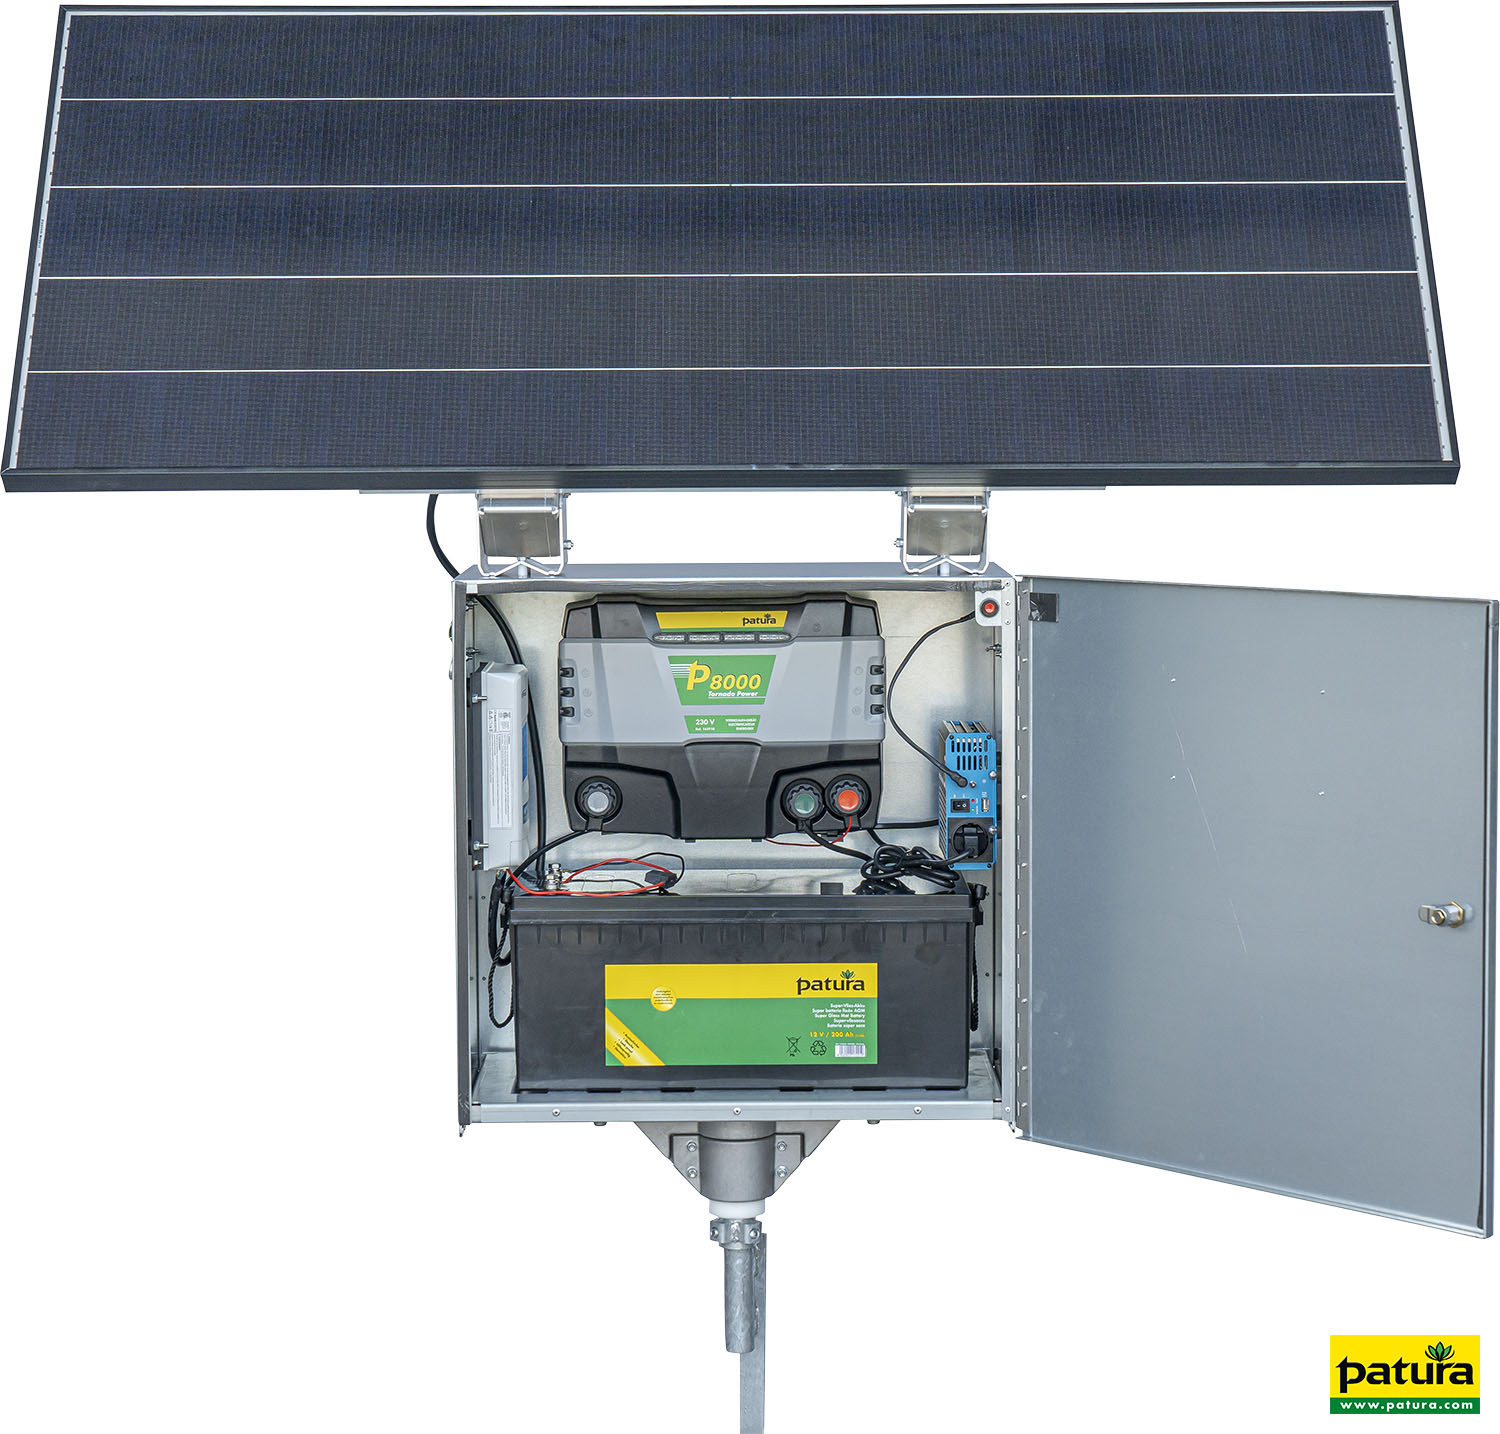 Sicherheitsbox XL mit P 8000 + 200 W Solarmodul